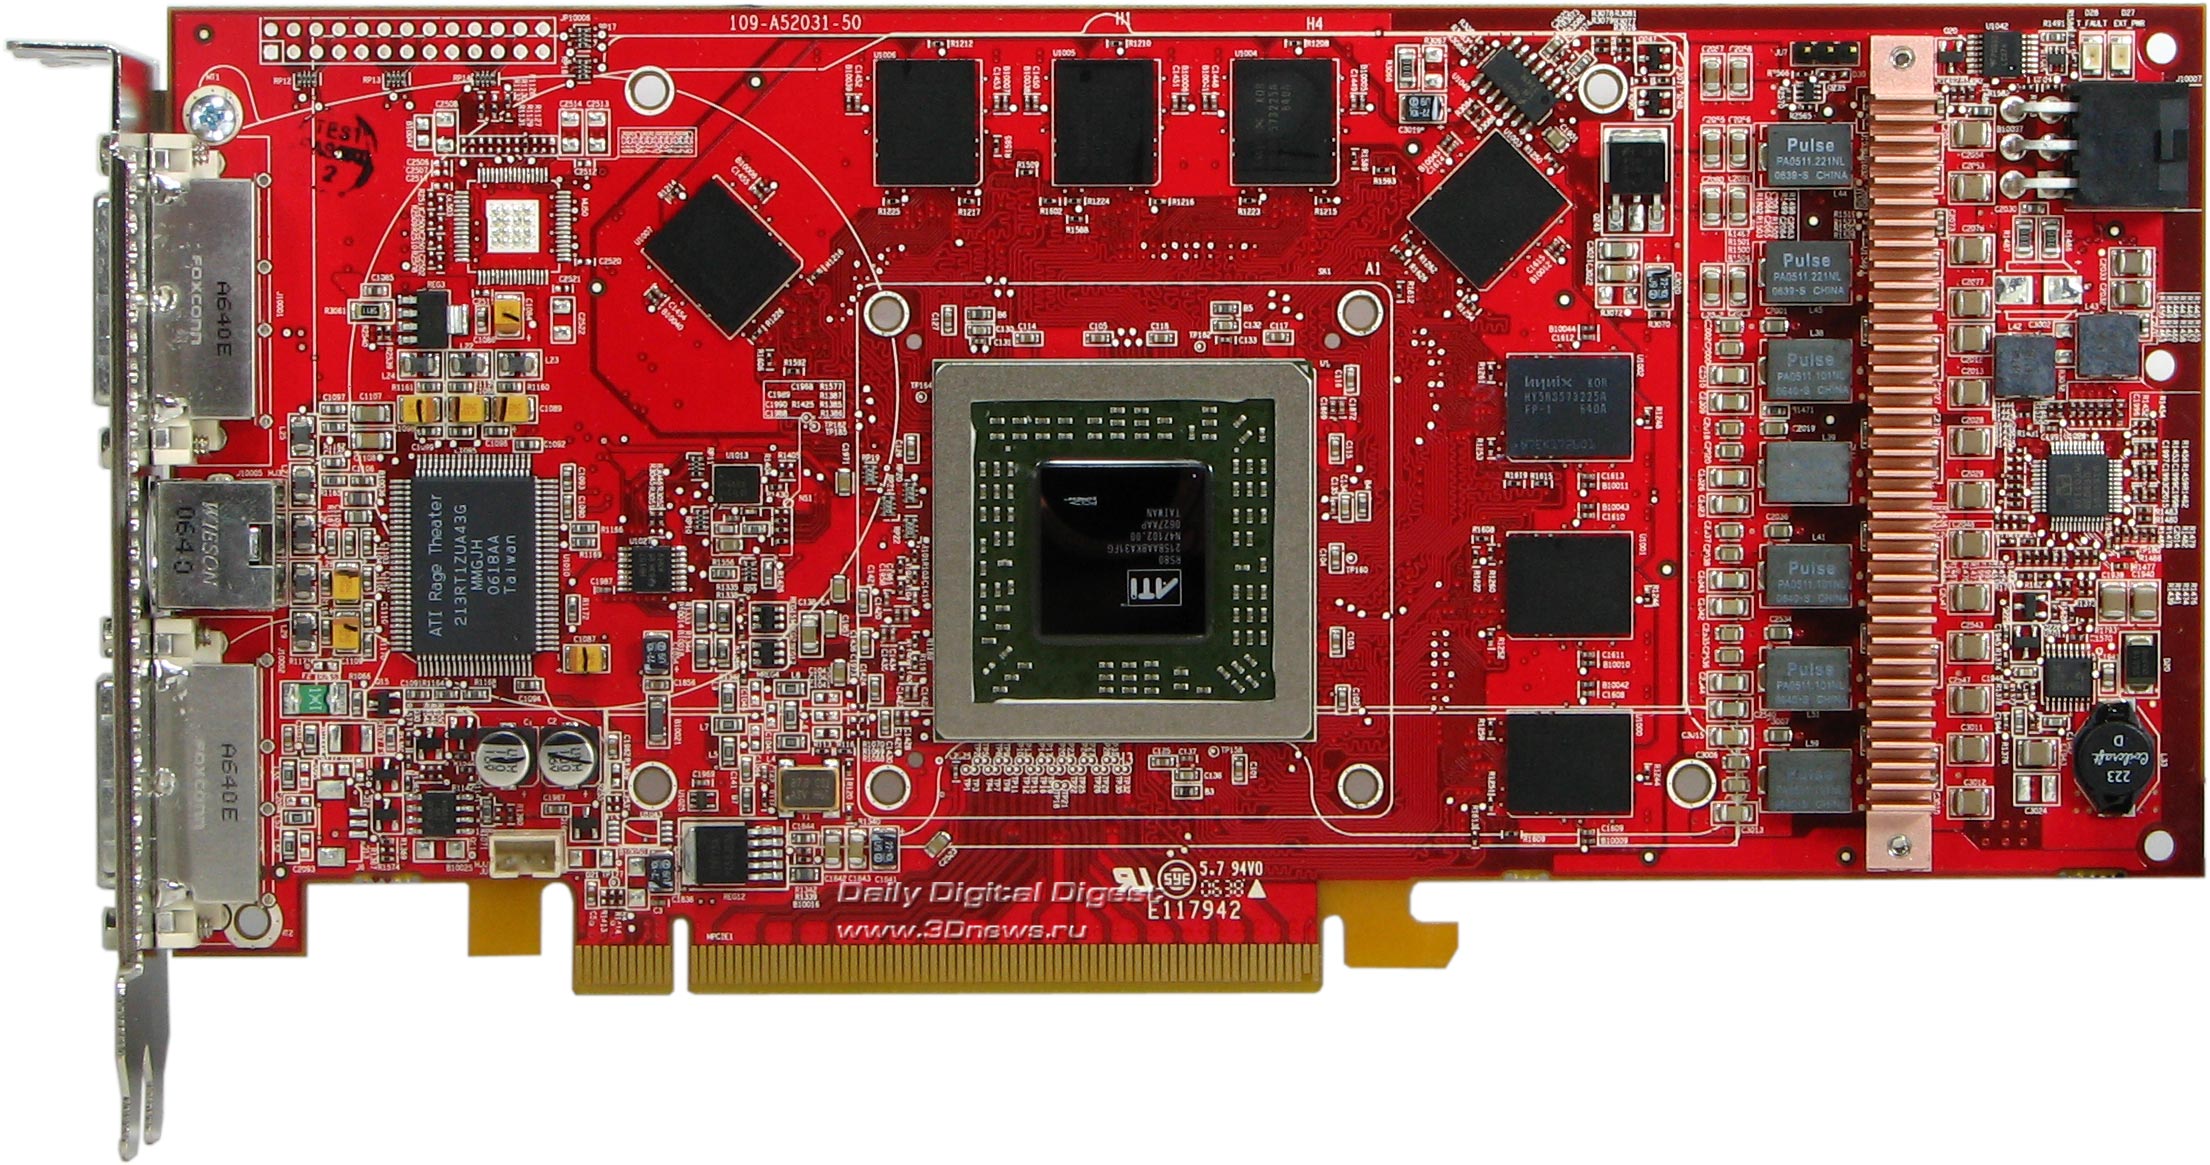 Производителя памяти видеокарты. Radeon x1950 XT AGP. ATI Radeon x1900 Crossfire. Видеокарта Radeon x1950xt 512mb. ATI 1950 Pro AGP.